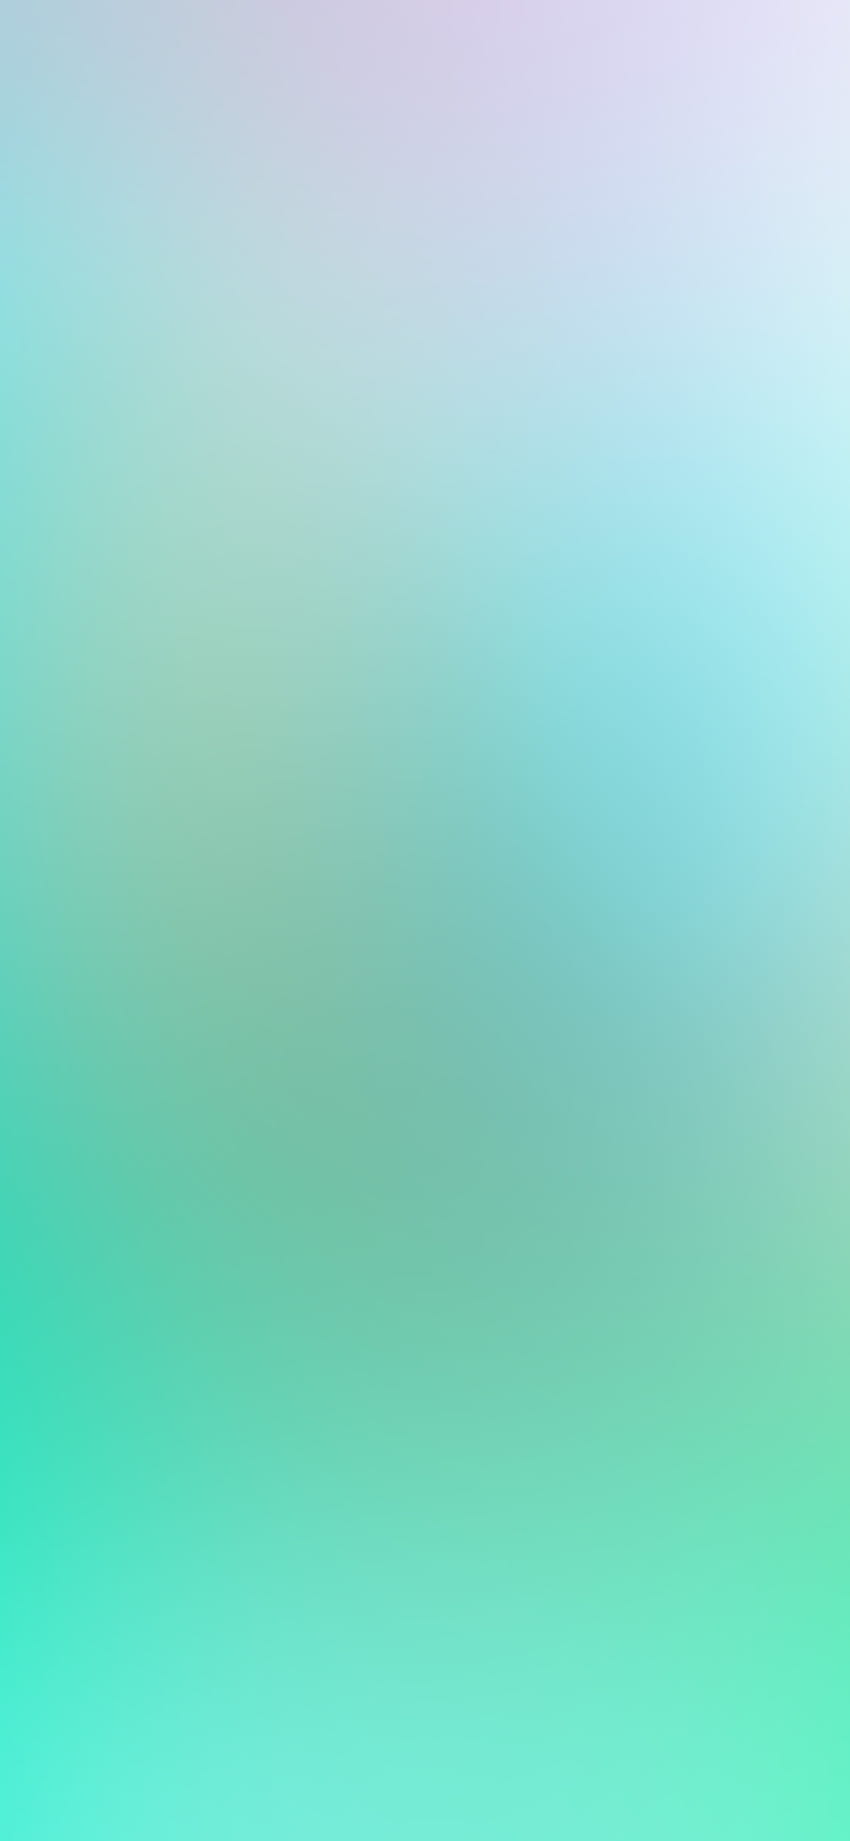 Blur Gradation Blue Green, Light Blue and Green HD phone wallpaper